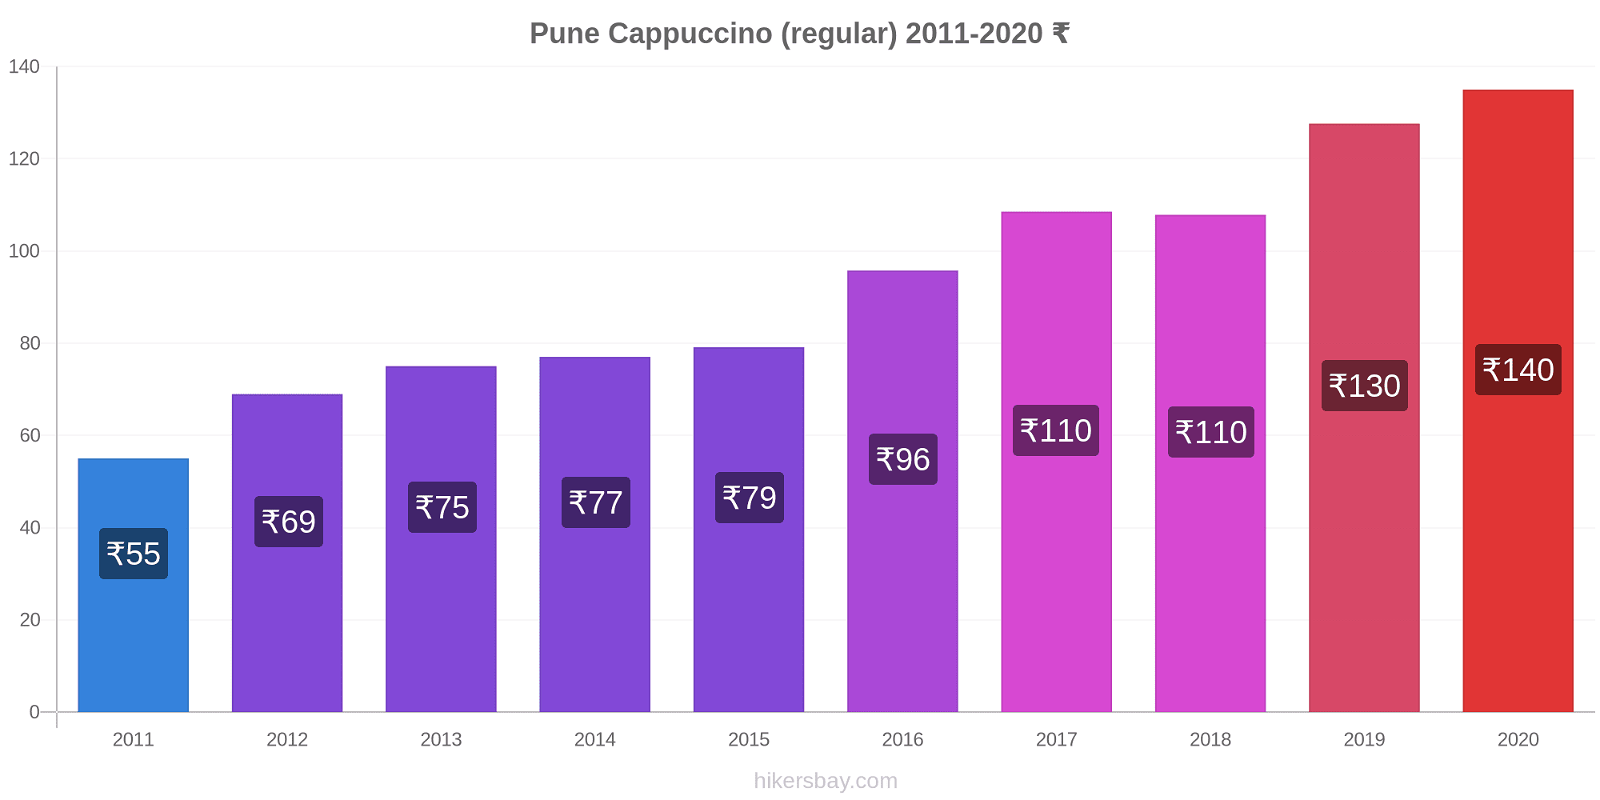 Pune price changes Cappuccino (regular) hikersbay.com